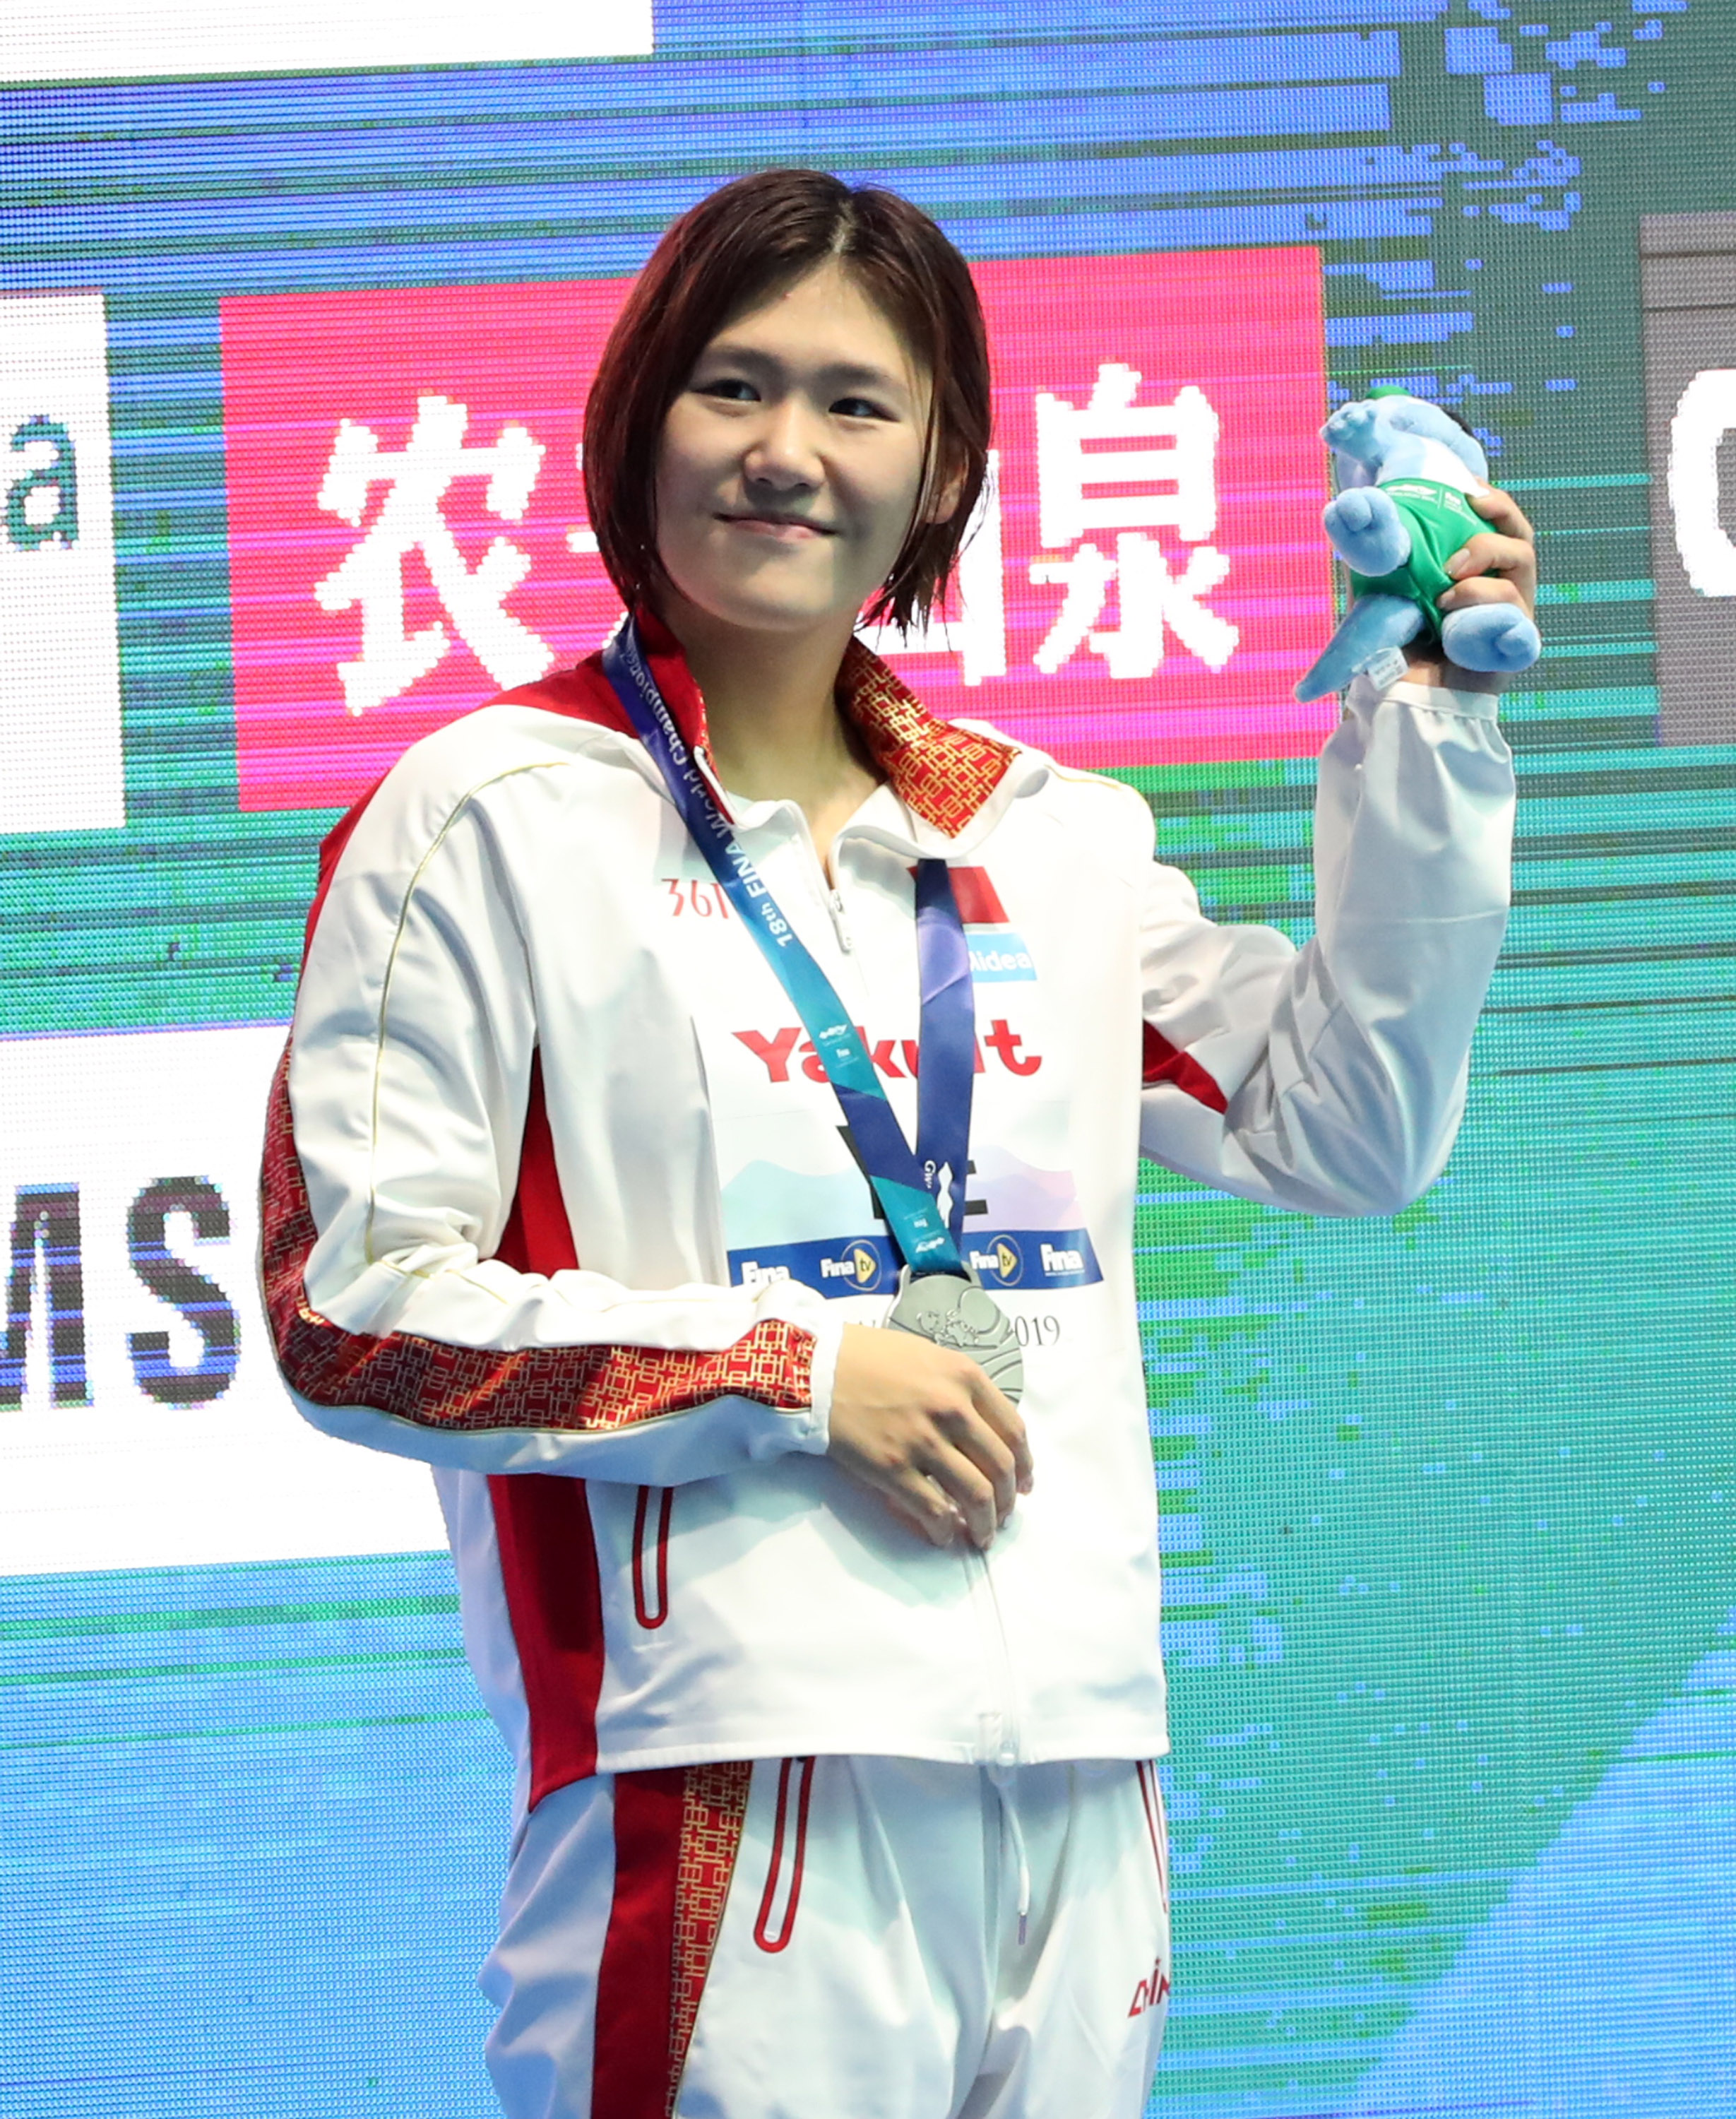 游泳——女子400米个人混合泳:叶诗文摘银